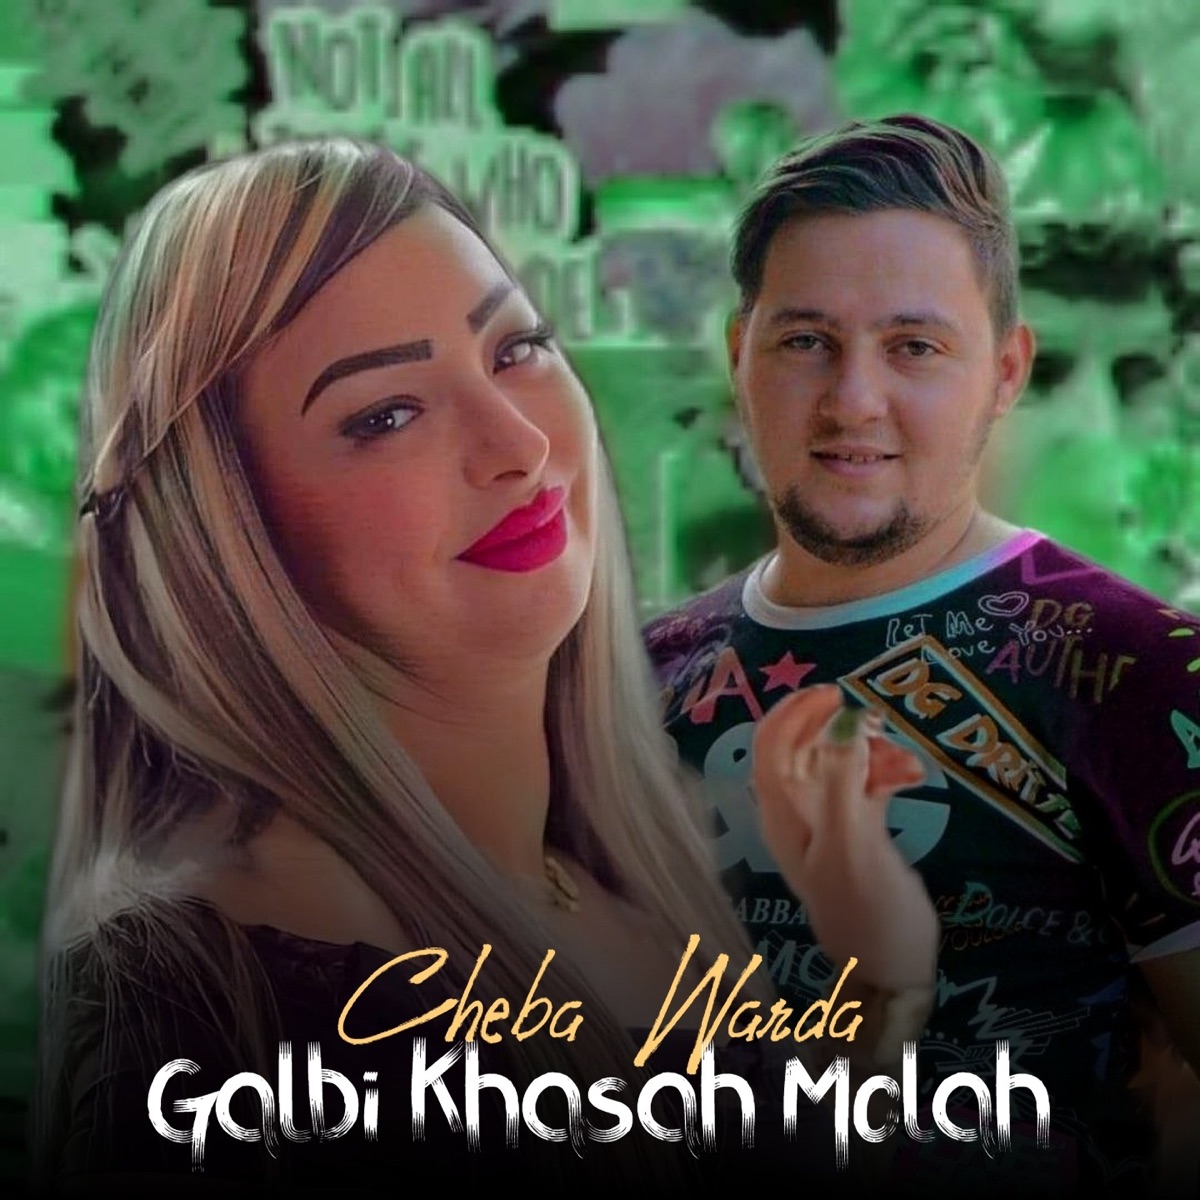 Galbi Khasah Molah - Single – Album par Cheba Warda – Apple Music